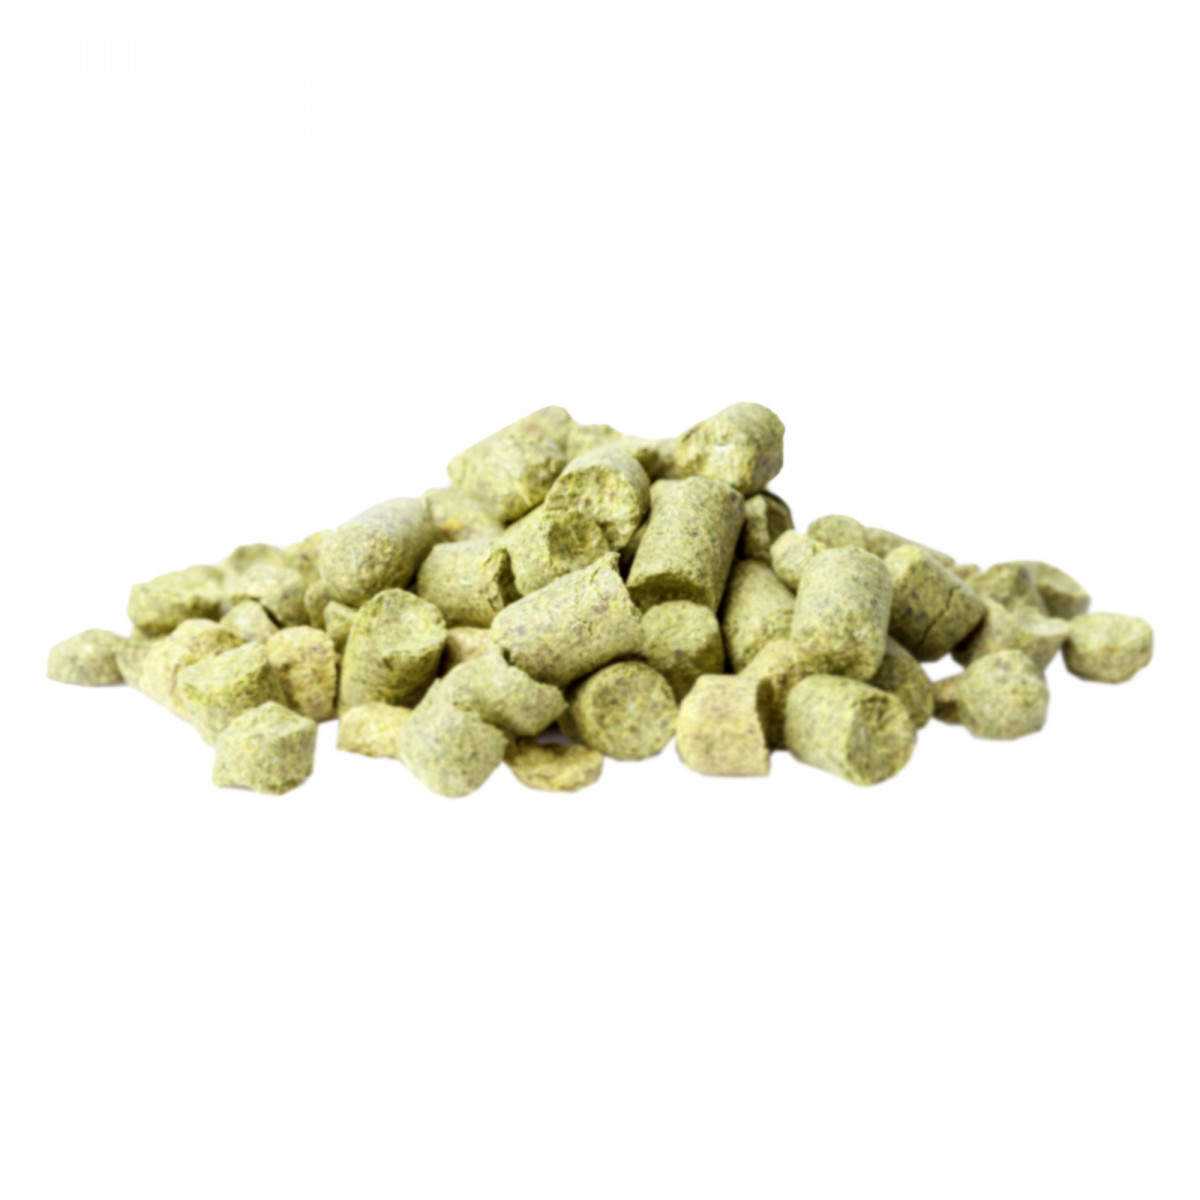 Hop pellets Idaho7 1 kg